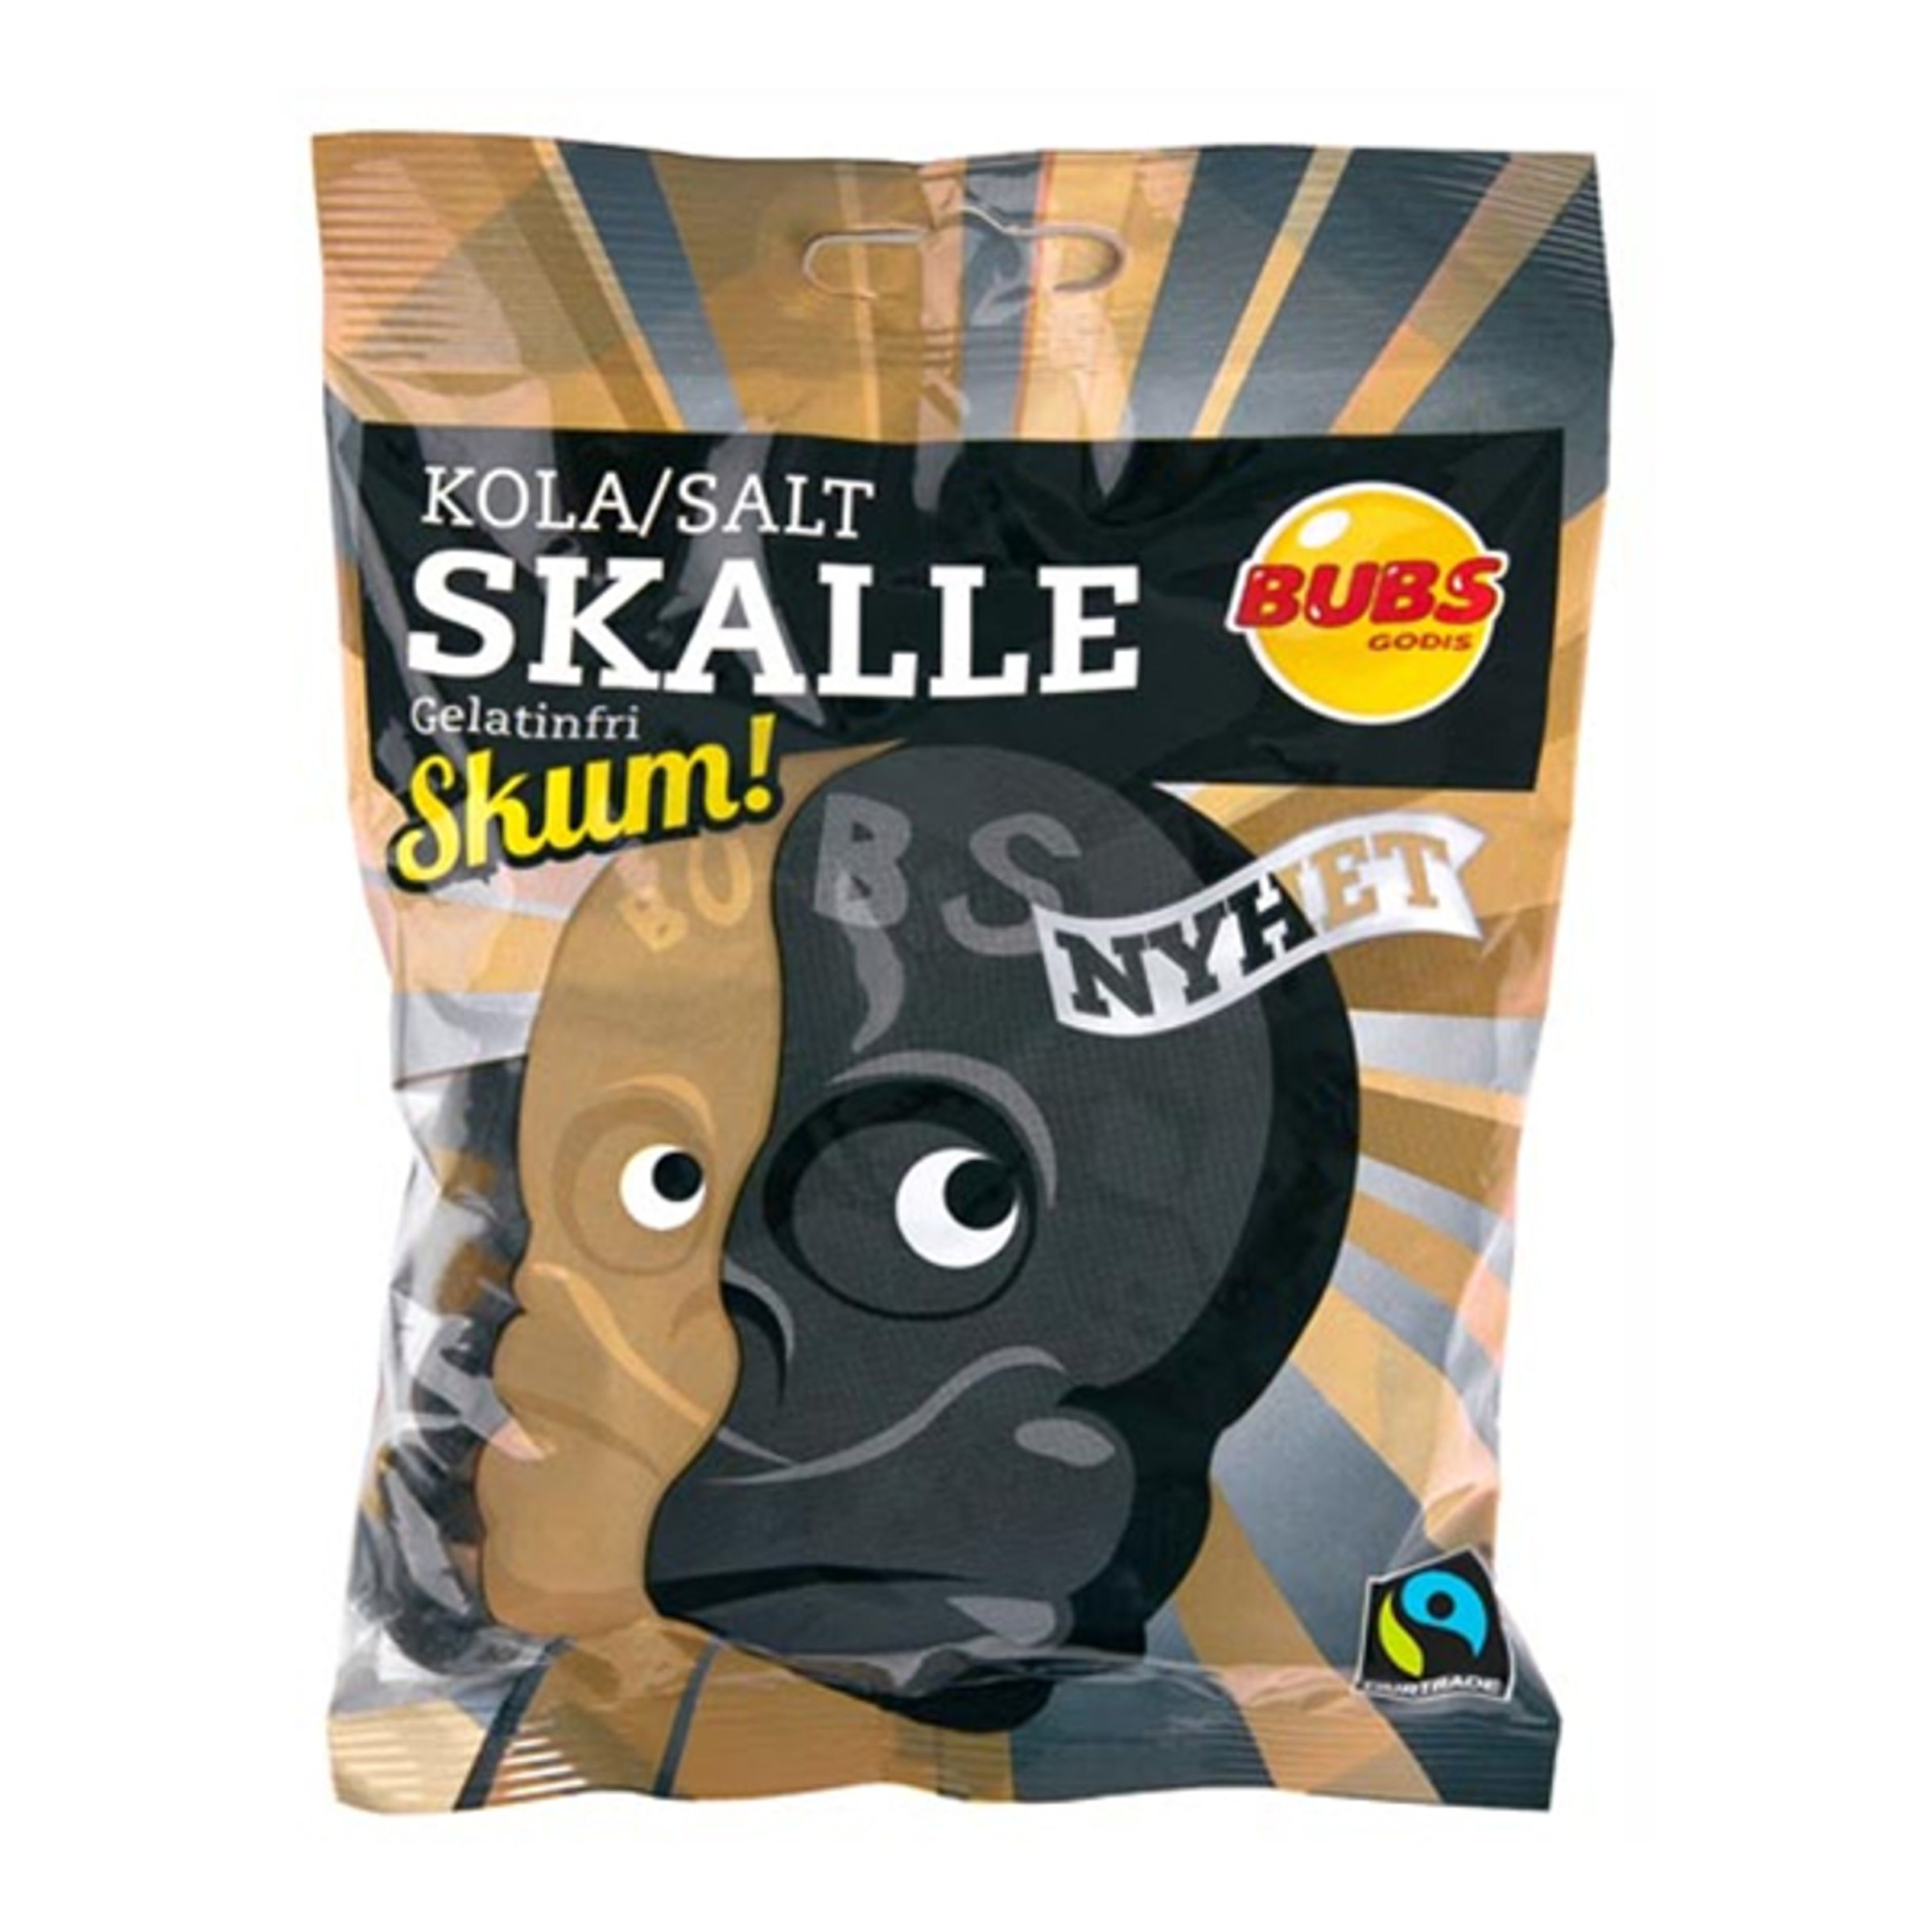 Kola/Salt Skalle Skum i Påse - 90 gram